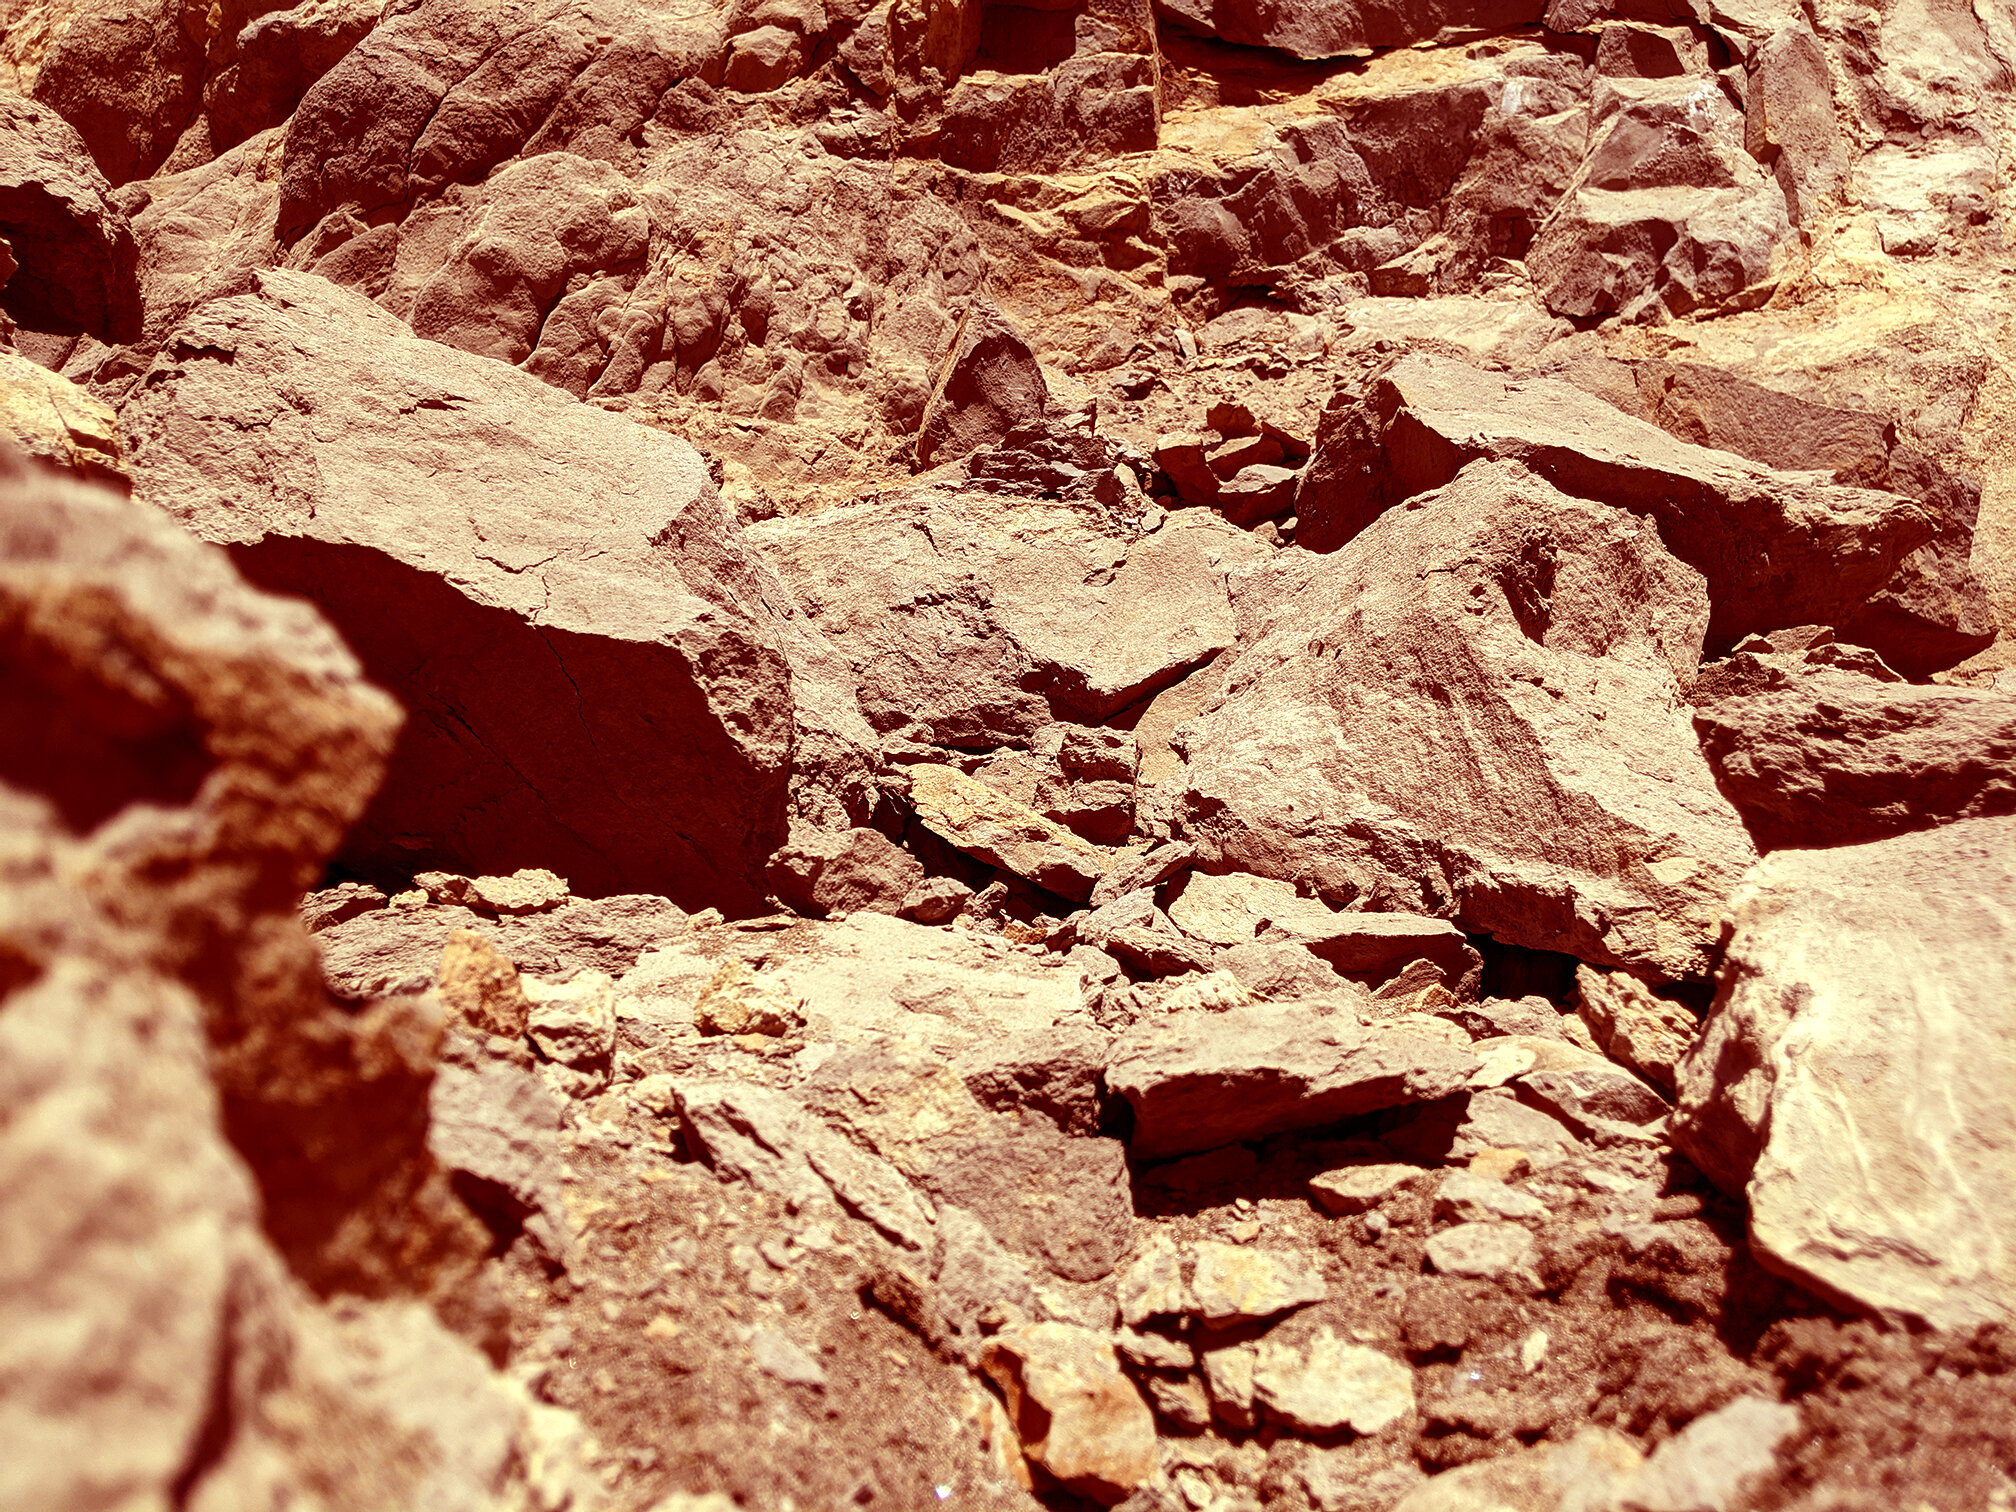 mars rocks.jpg